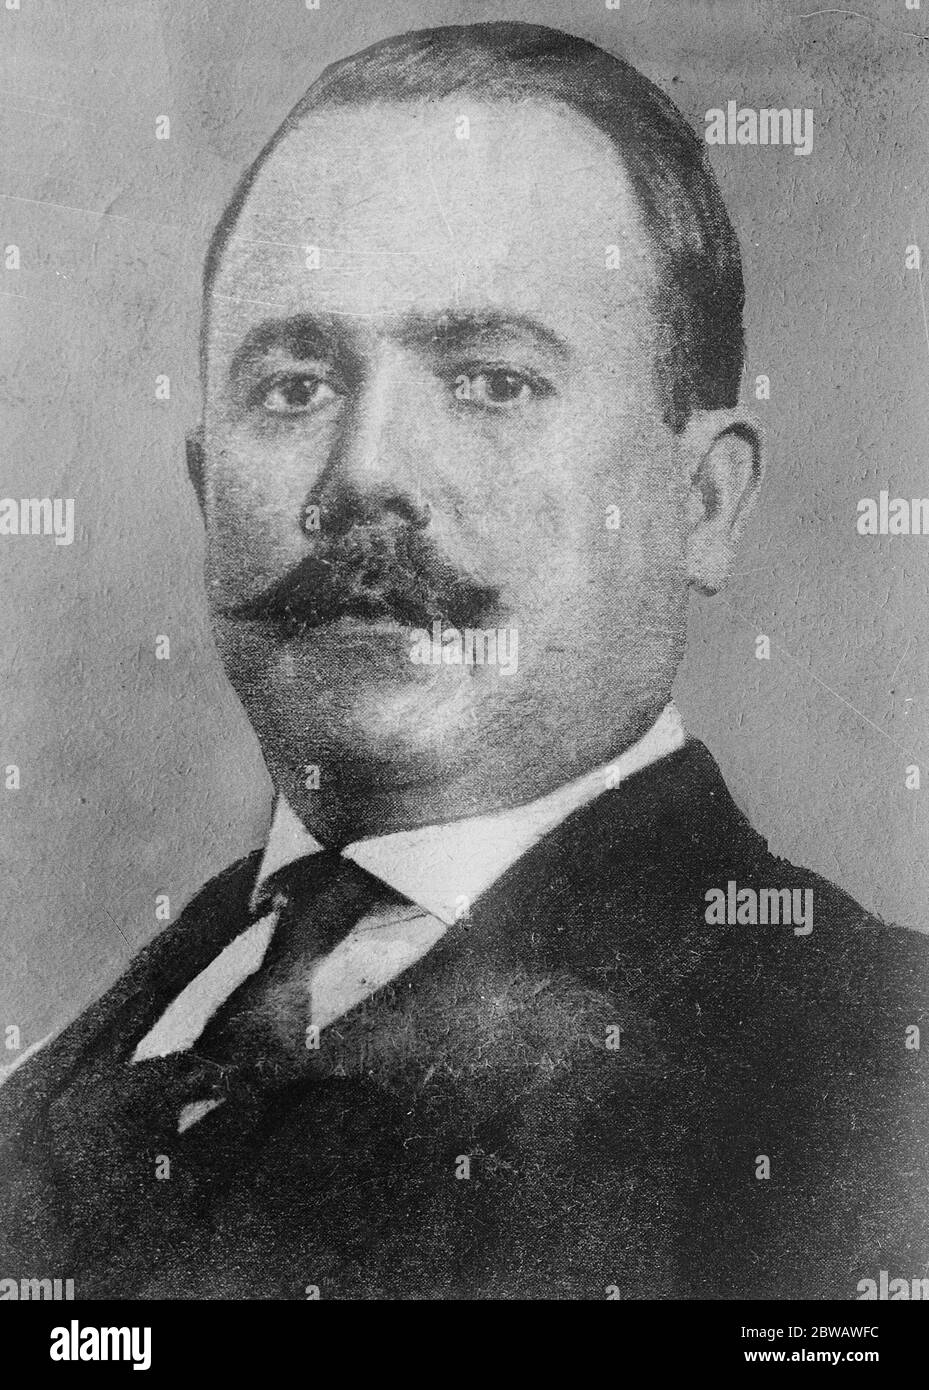 Mexikanischer Präsident krank Präsident Obregon von Mexiko, der schwer mit Bronchialprobleme liegt 2 August 1922 General Álvaro Obregón Salido ( 19 Februar 1880 - 17 Juli 1928 ) Stockfoto